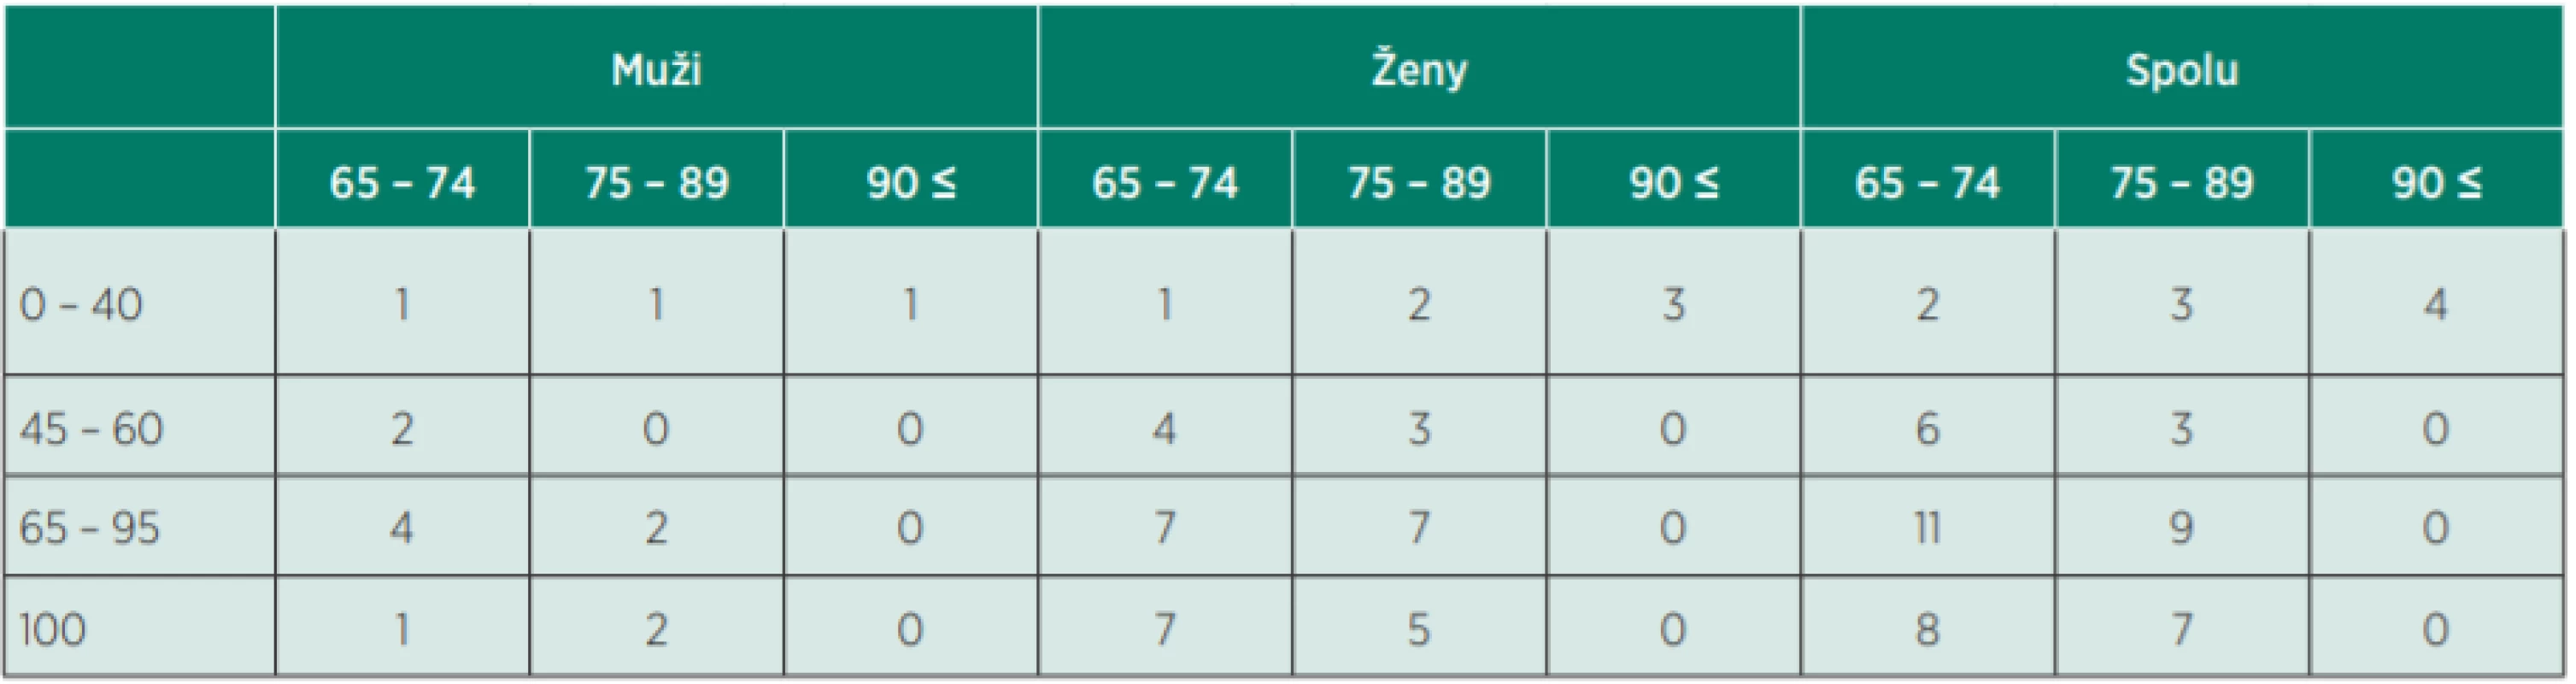 Bodové skóre respondentov v teste ADL podľa pohlavia a veku.